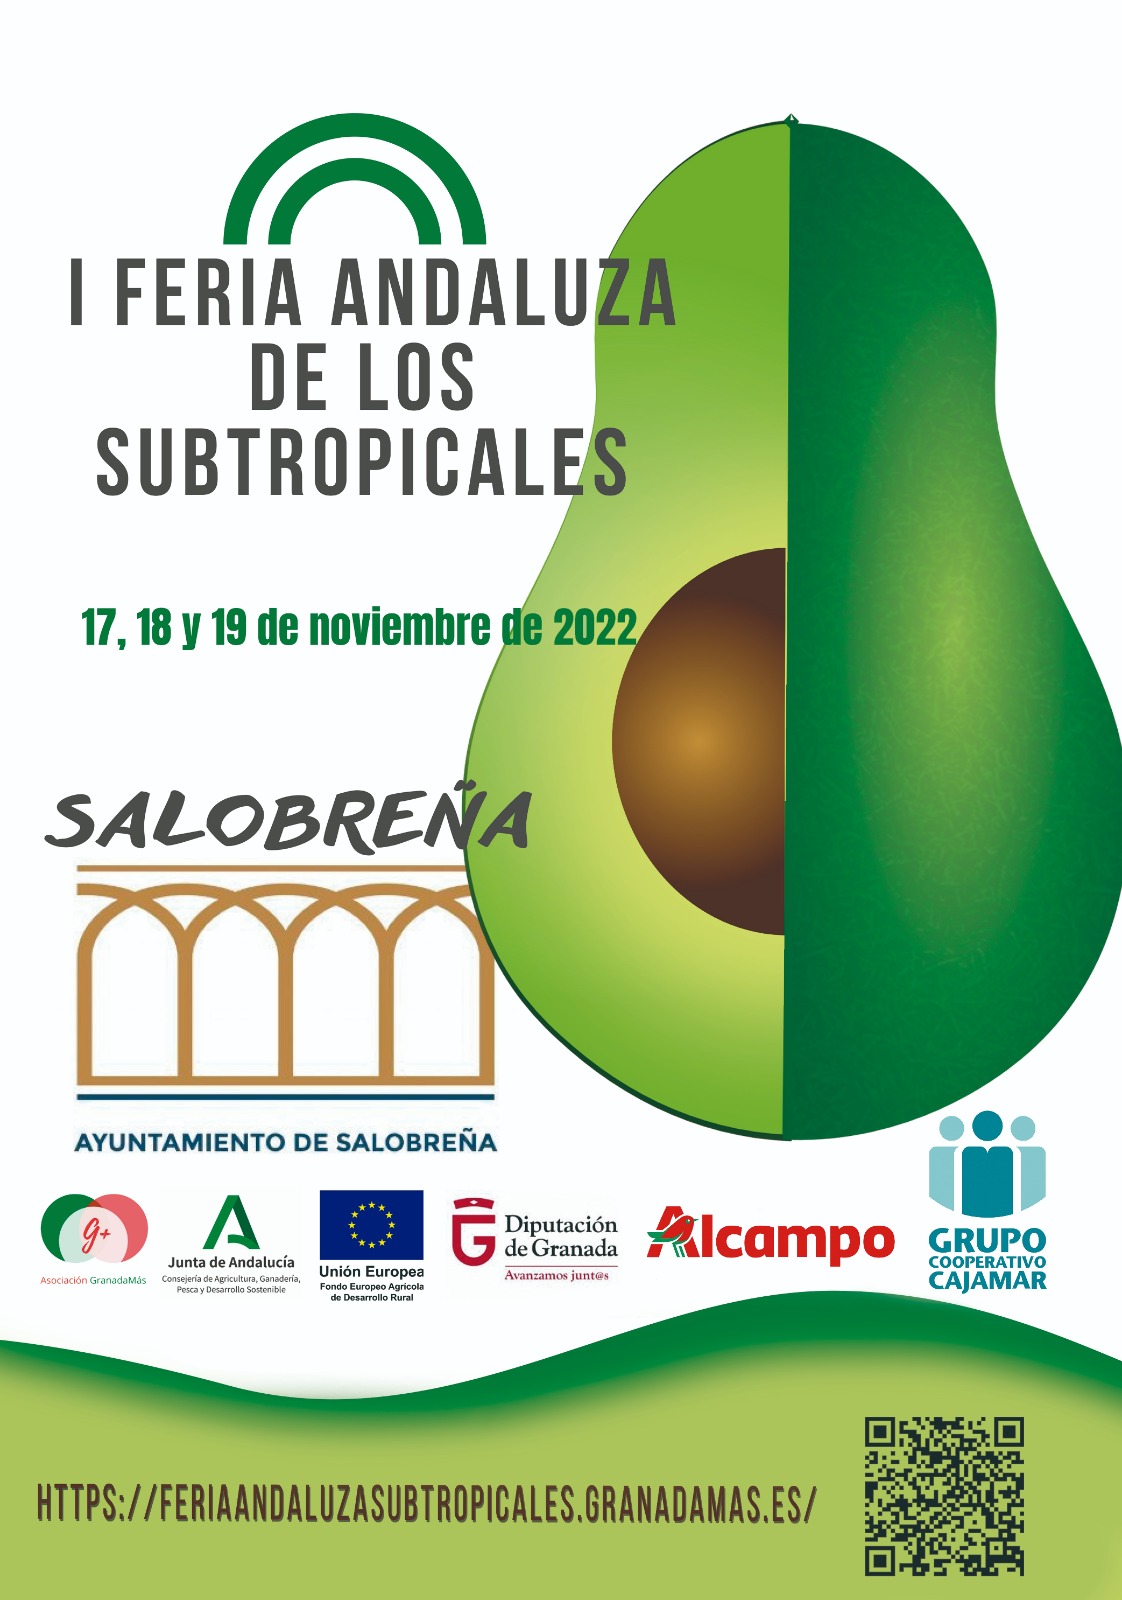 I Feria Andaluza de los Subtropicales